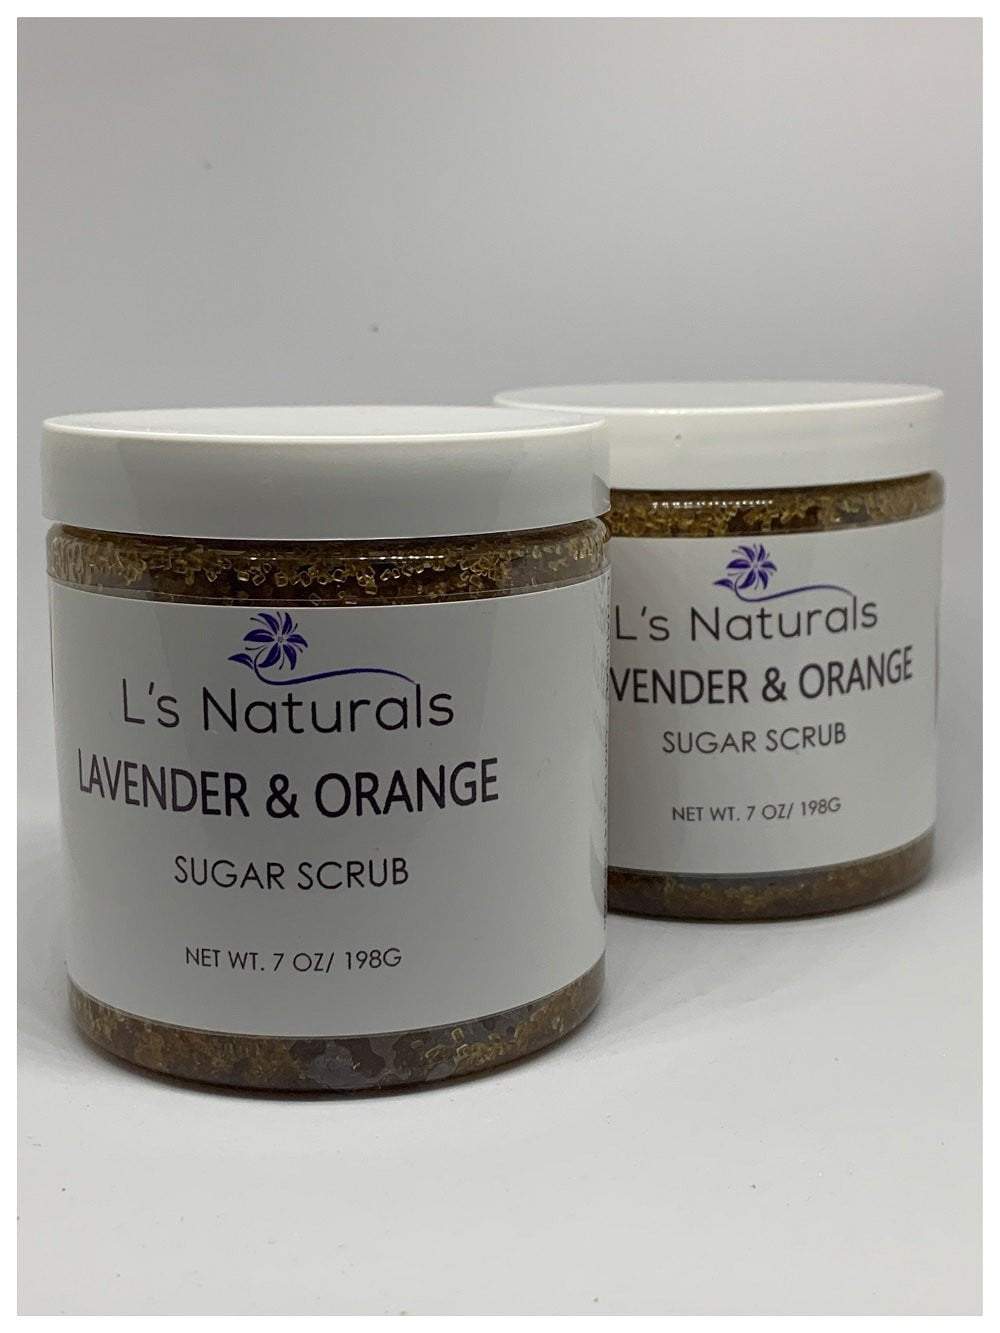 Lavender and Orange Sugar Scrub - L's Naturals | Bath & Body Boutique